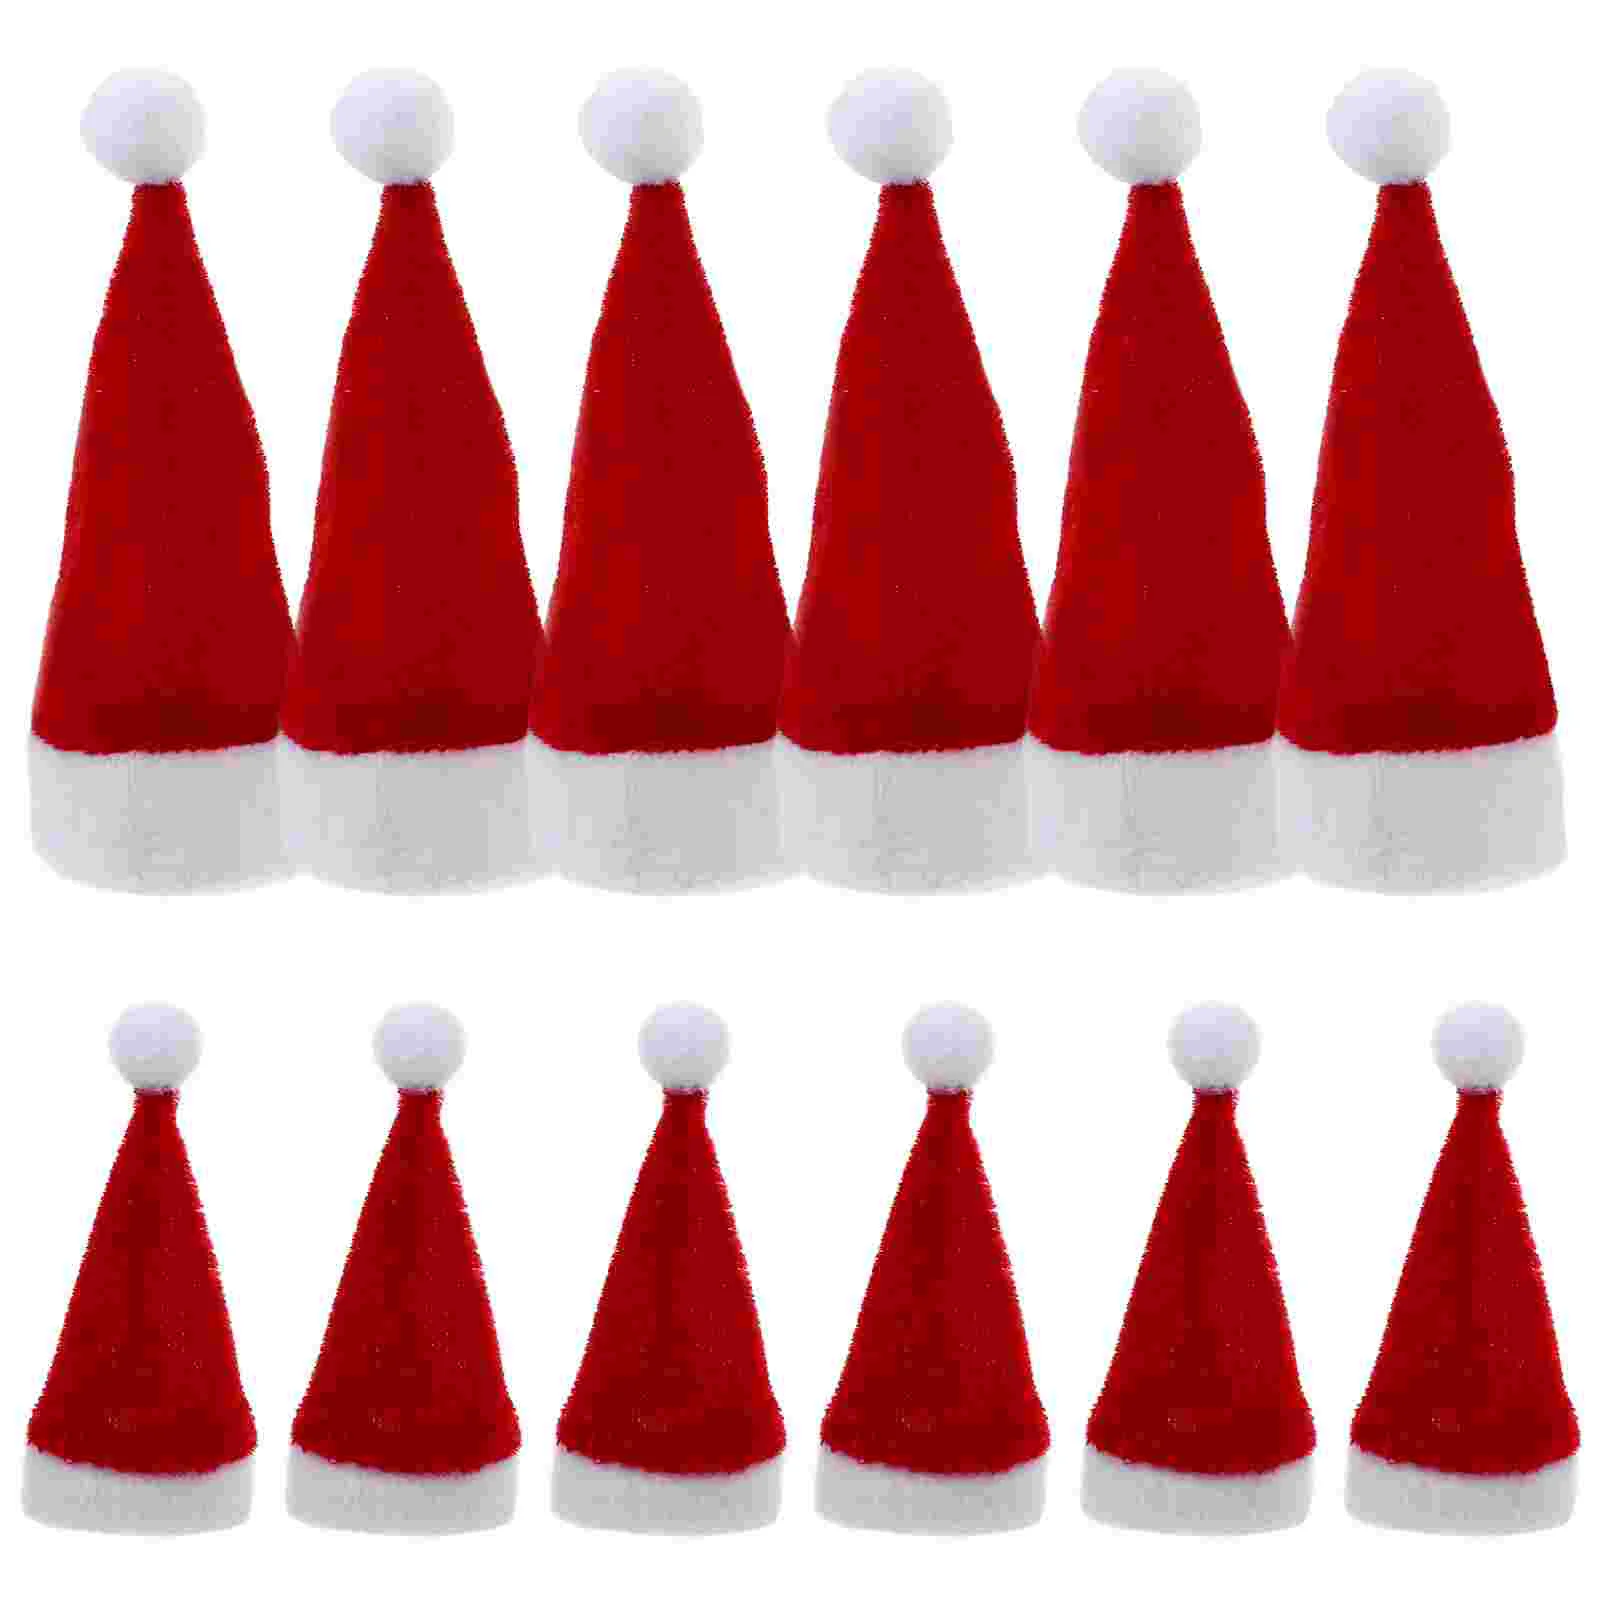 

12pcs Miniature Christmas Hat Decoration Lollipop Bottle Small Lollipop Santa Hat Party Favor